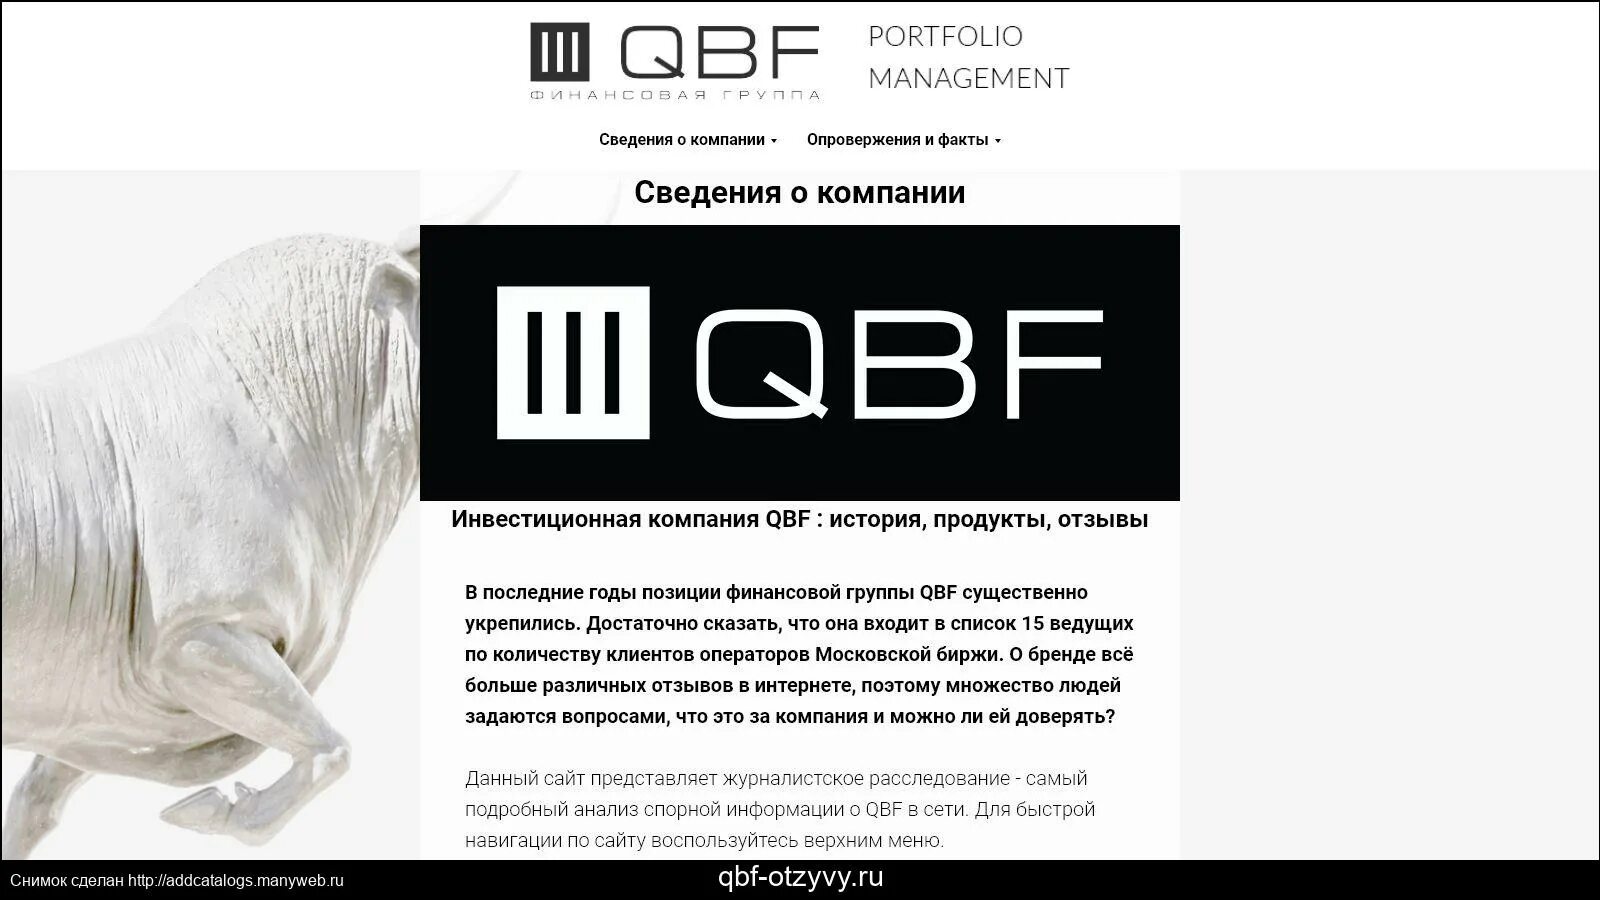 Компания QBF. Финансовая группа QBF. ИК КЬЮБИЭФ. QBF лого.